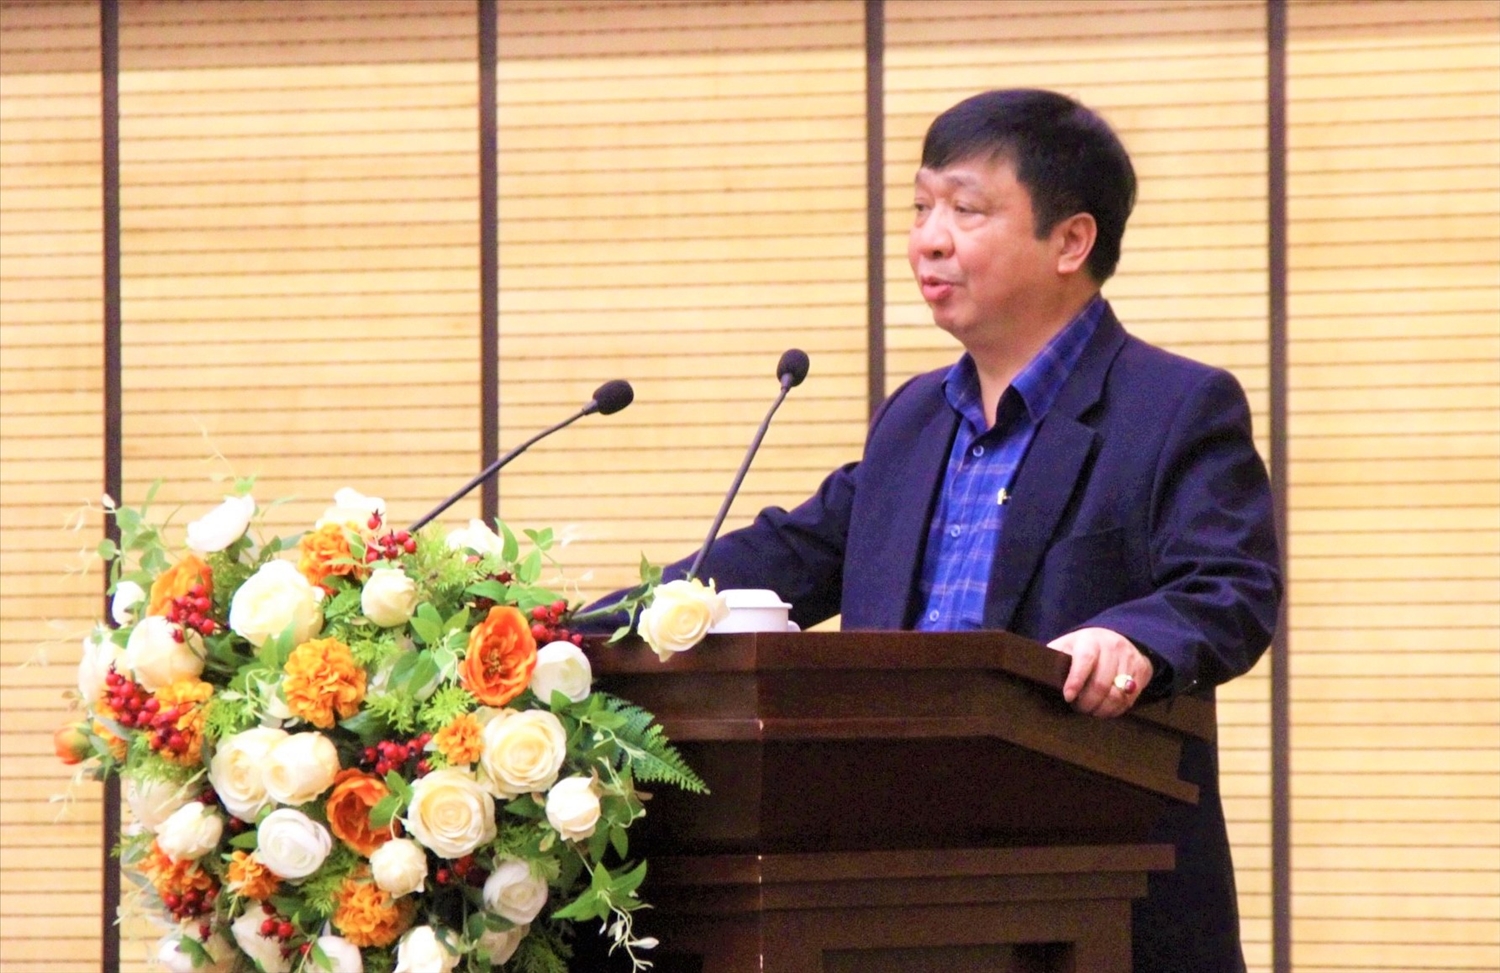 Phó Chánh Văn phòng Thường trực Văn phòng Điều phối NTM thành phố Hà Nội Nguyễn Văn Chí phát biểu tại Hội nghị.